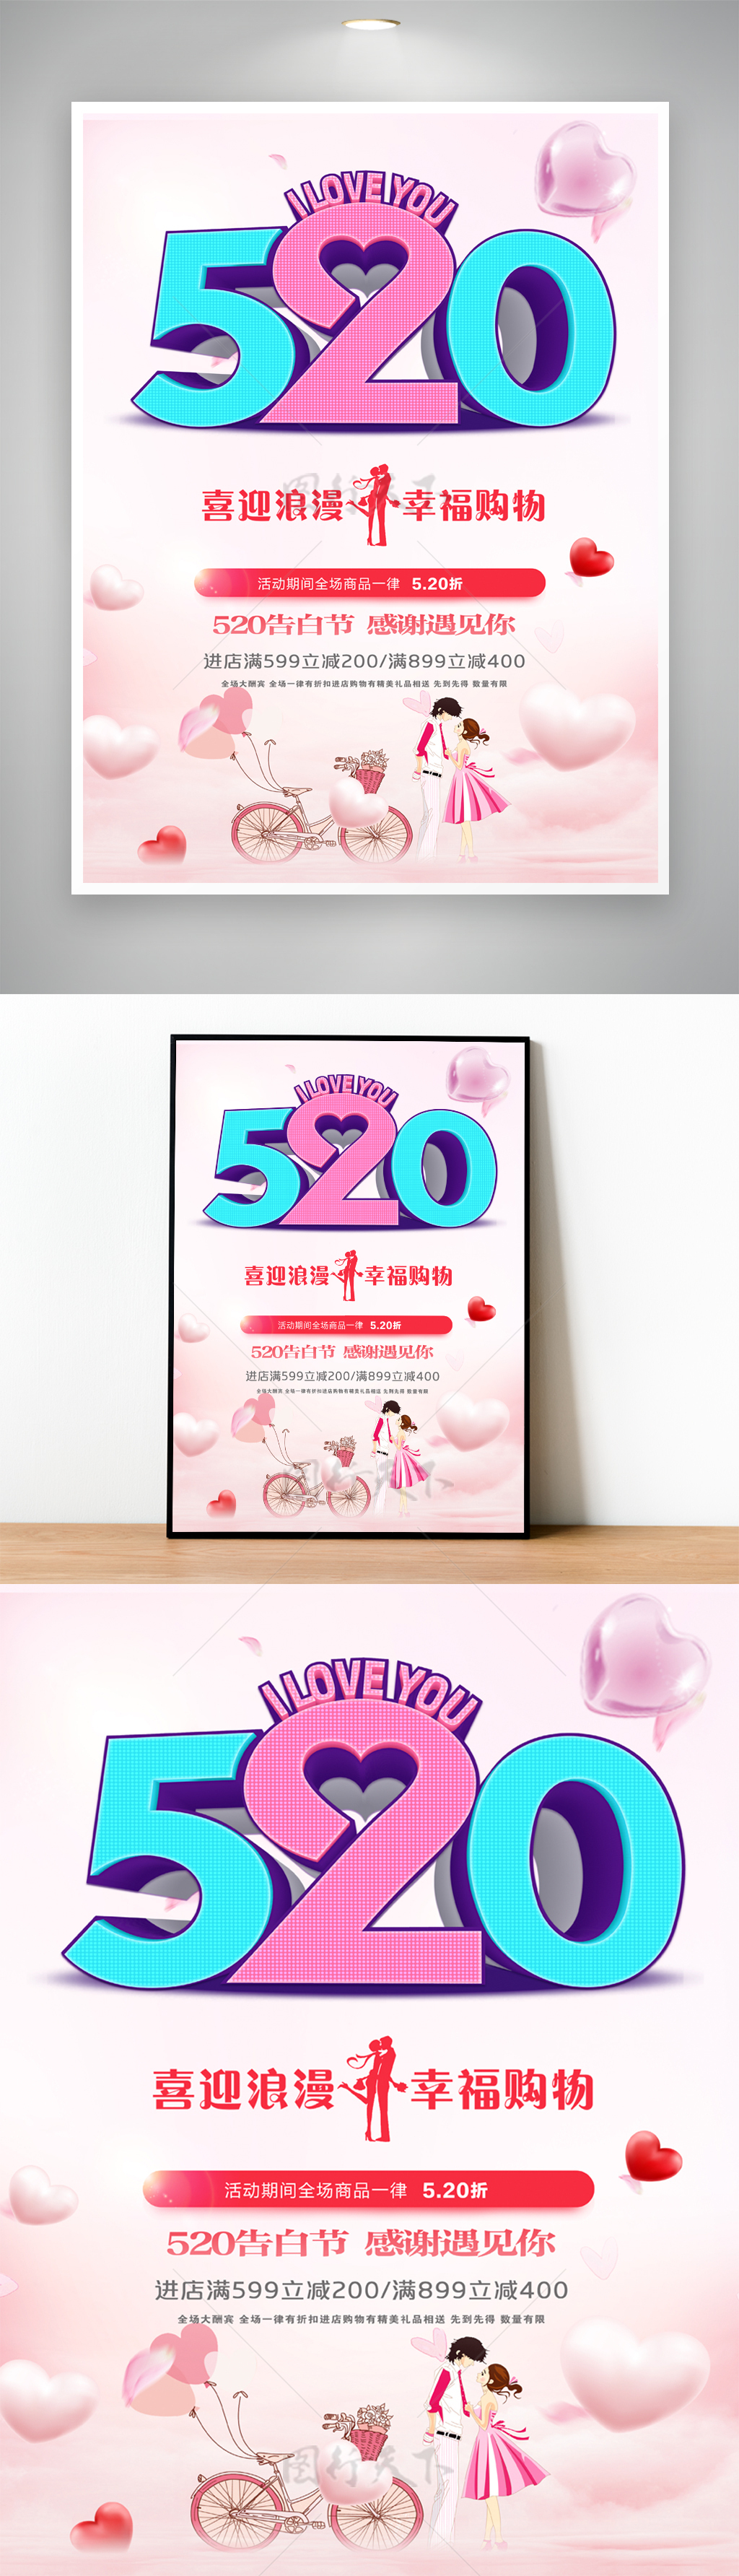 520喜迎浪漫情人节促销海报